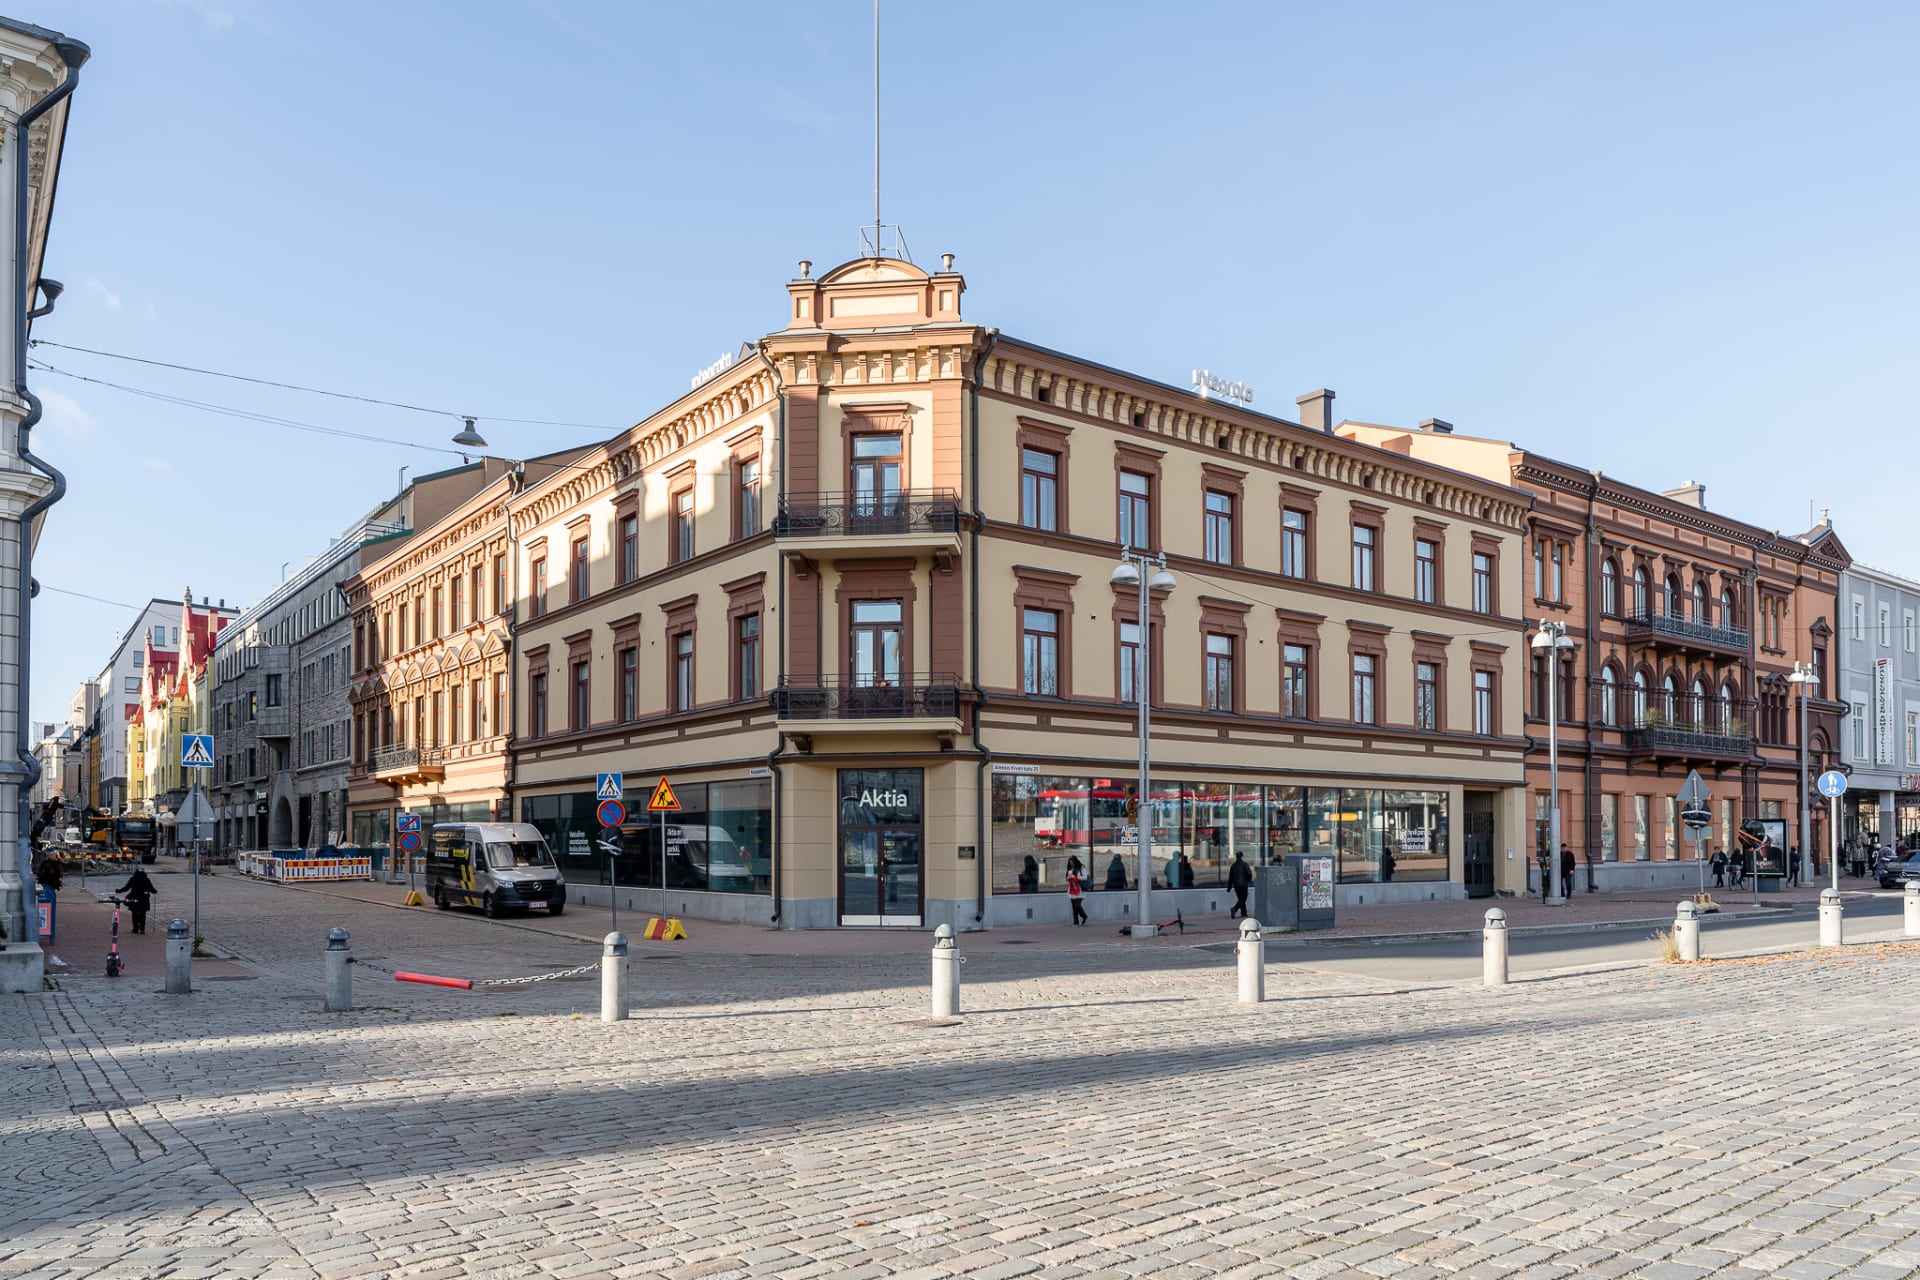 2ndhomes Tampereen asunnot sijaitsevat Tampereen keskustassa. Kuvassa historiallinen Sandbergin talo Tampereen Keskustorilla.